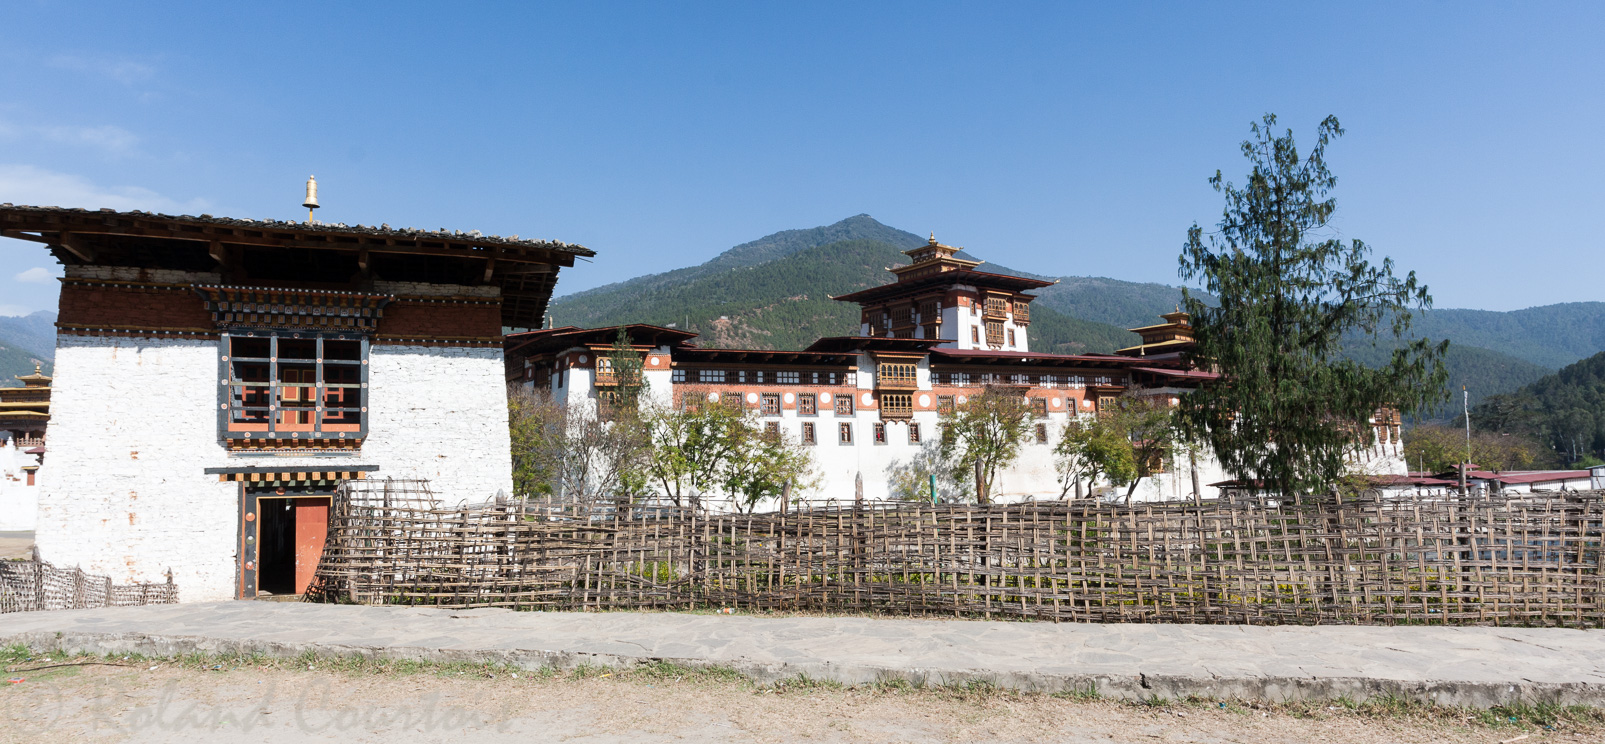 Entrée du pont d'accès vers le Dzong de Punakha.